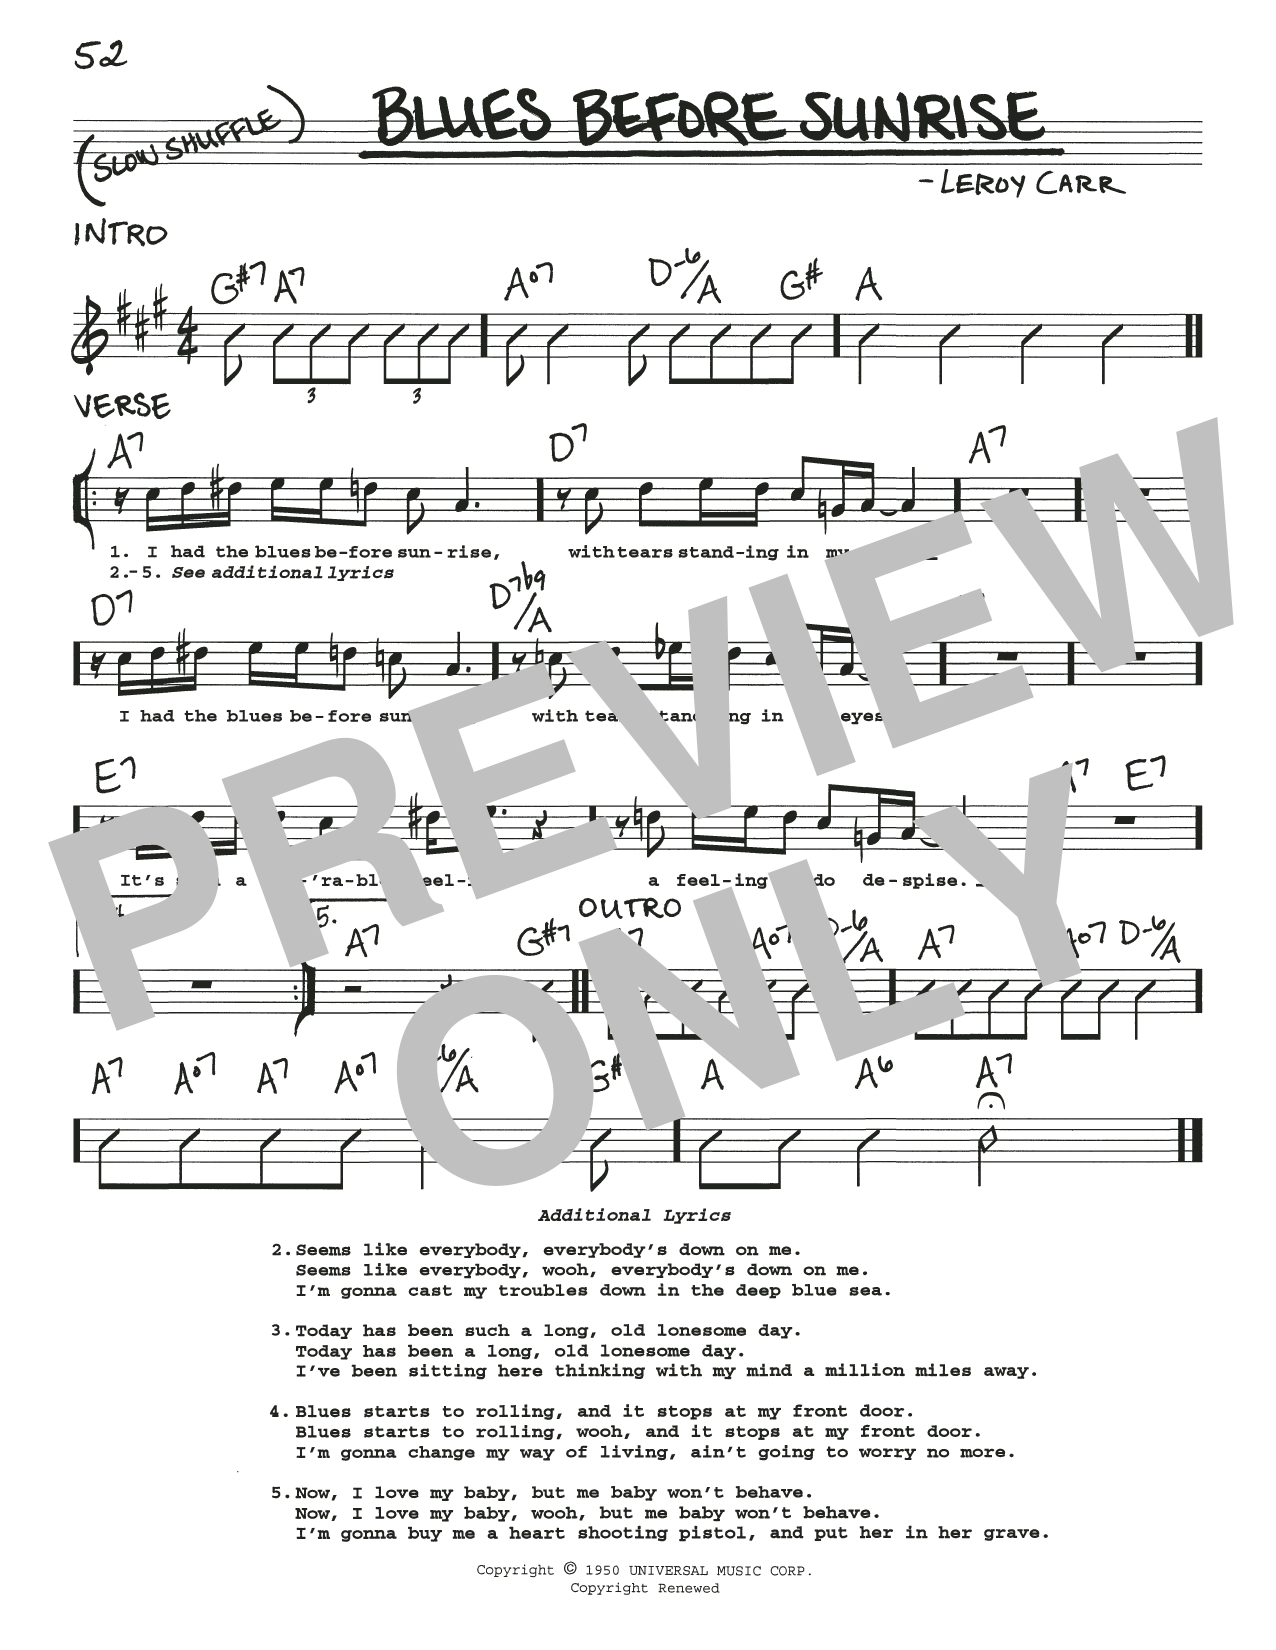 Leroy Carr 'Blues Before Sunrise' sheet music, chords, lyrics